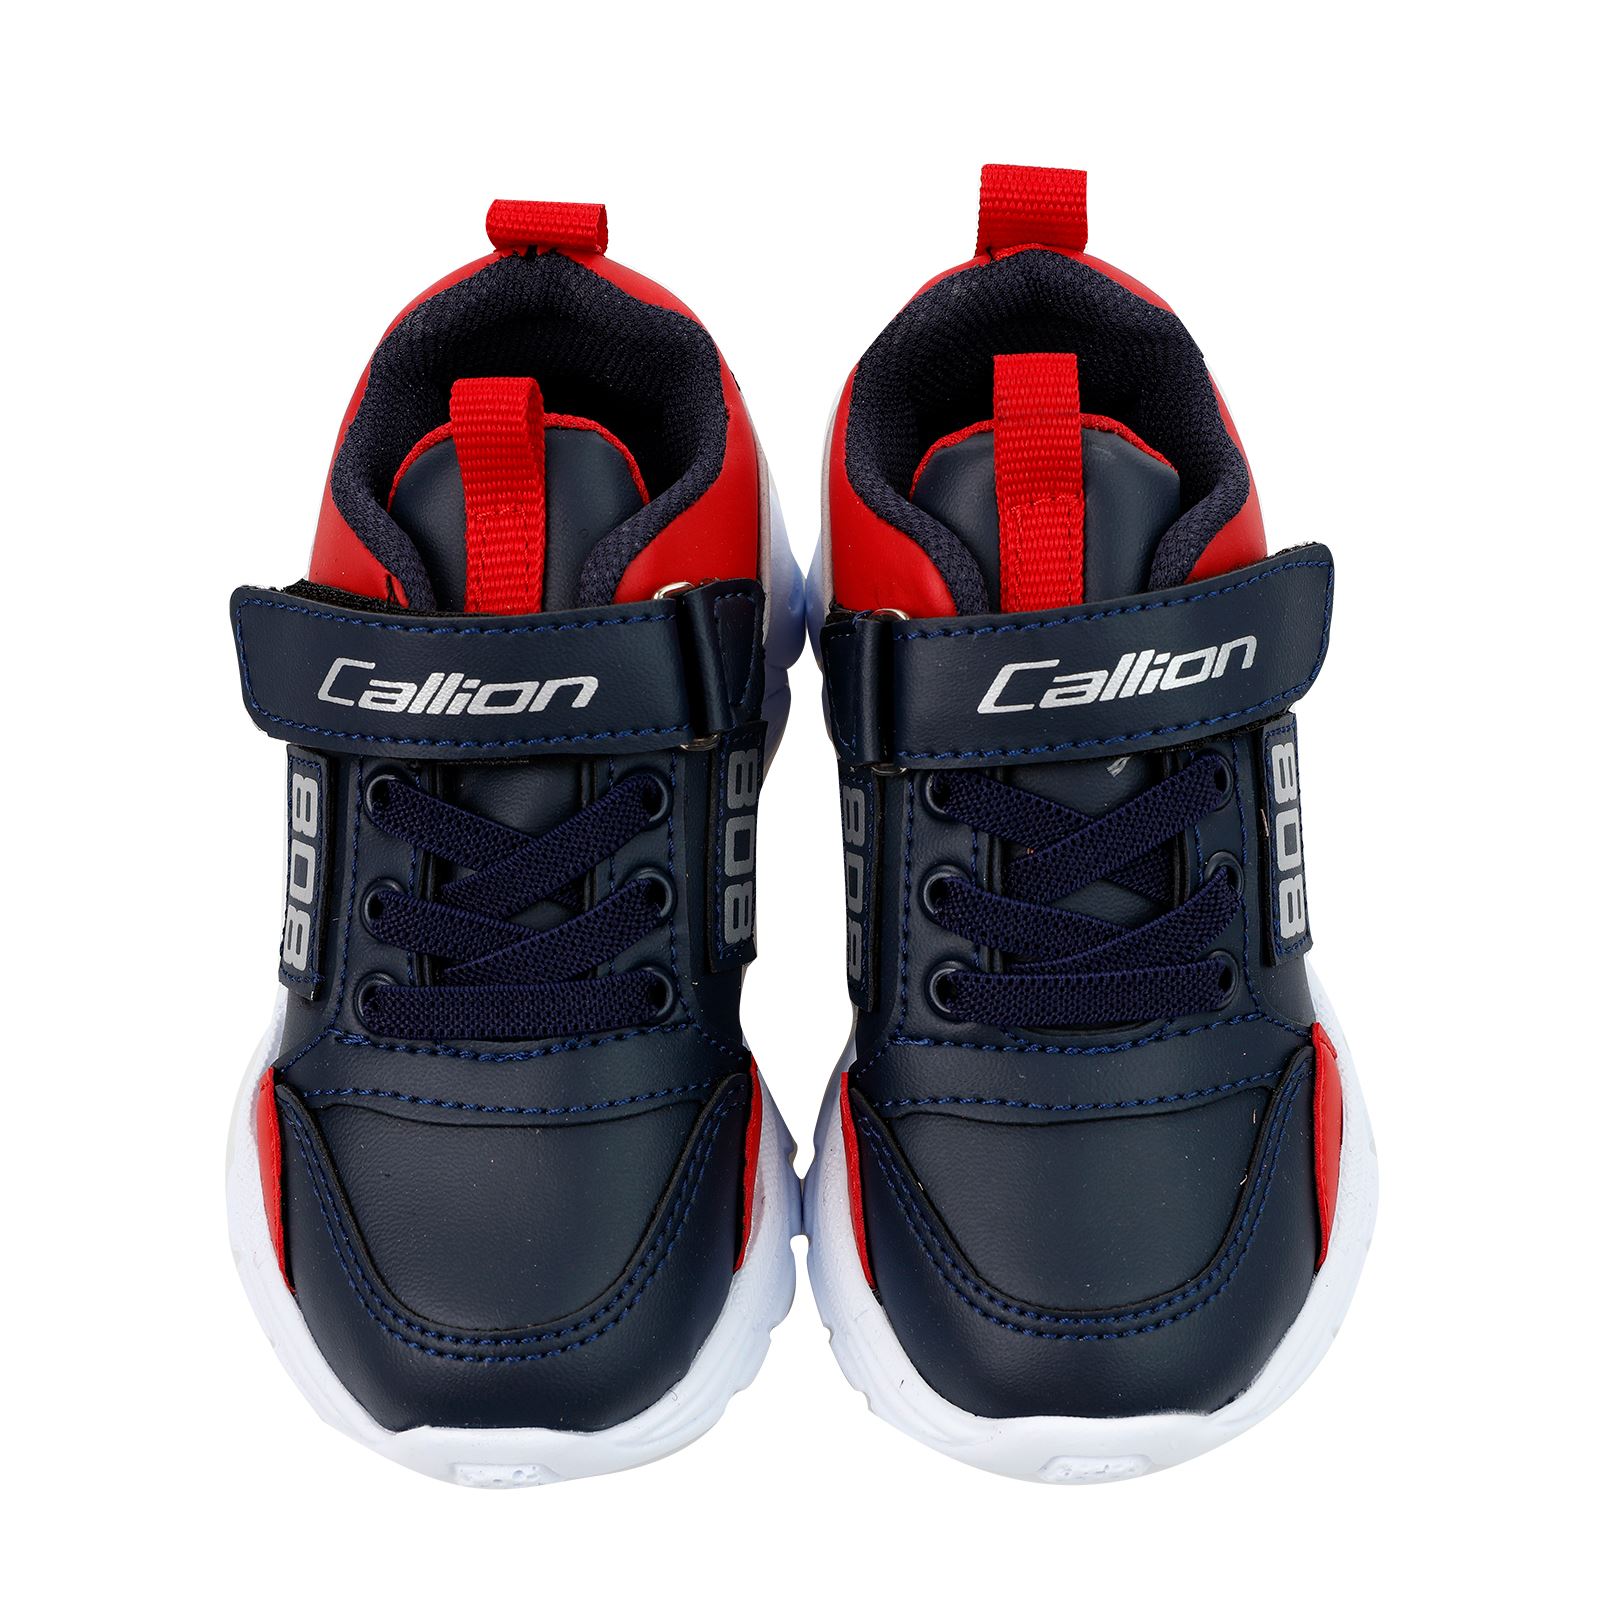 Callion Erkek Çocuk Spor Ayakkabı 26-30 Numara Lacivert-Kırmızı